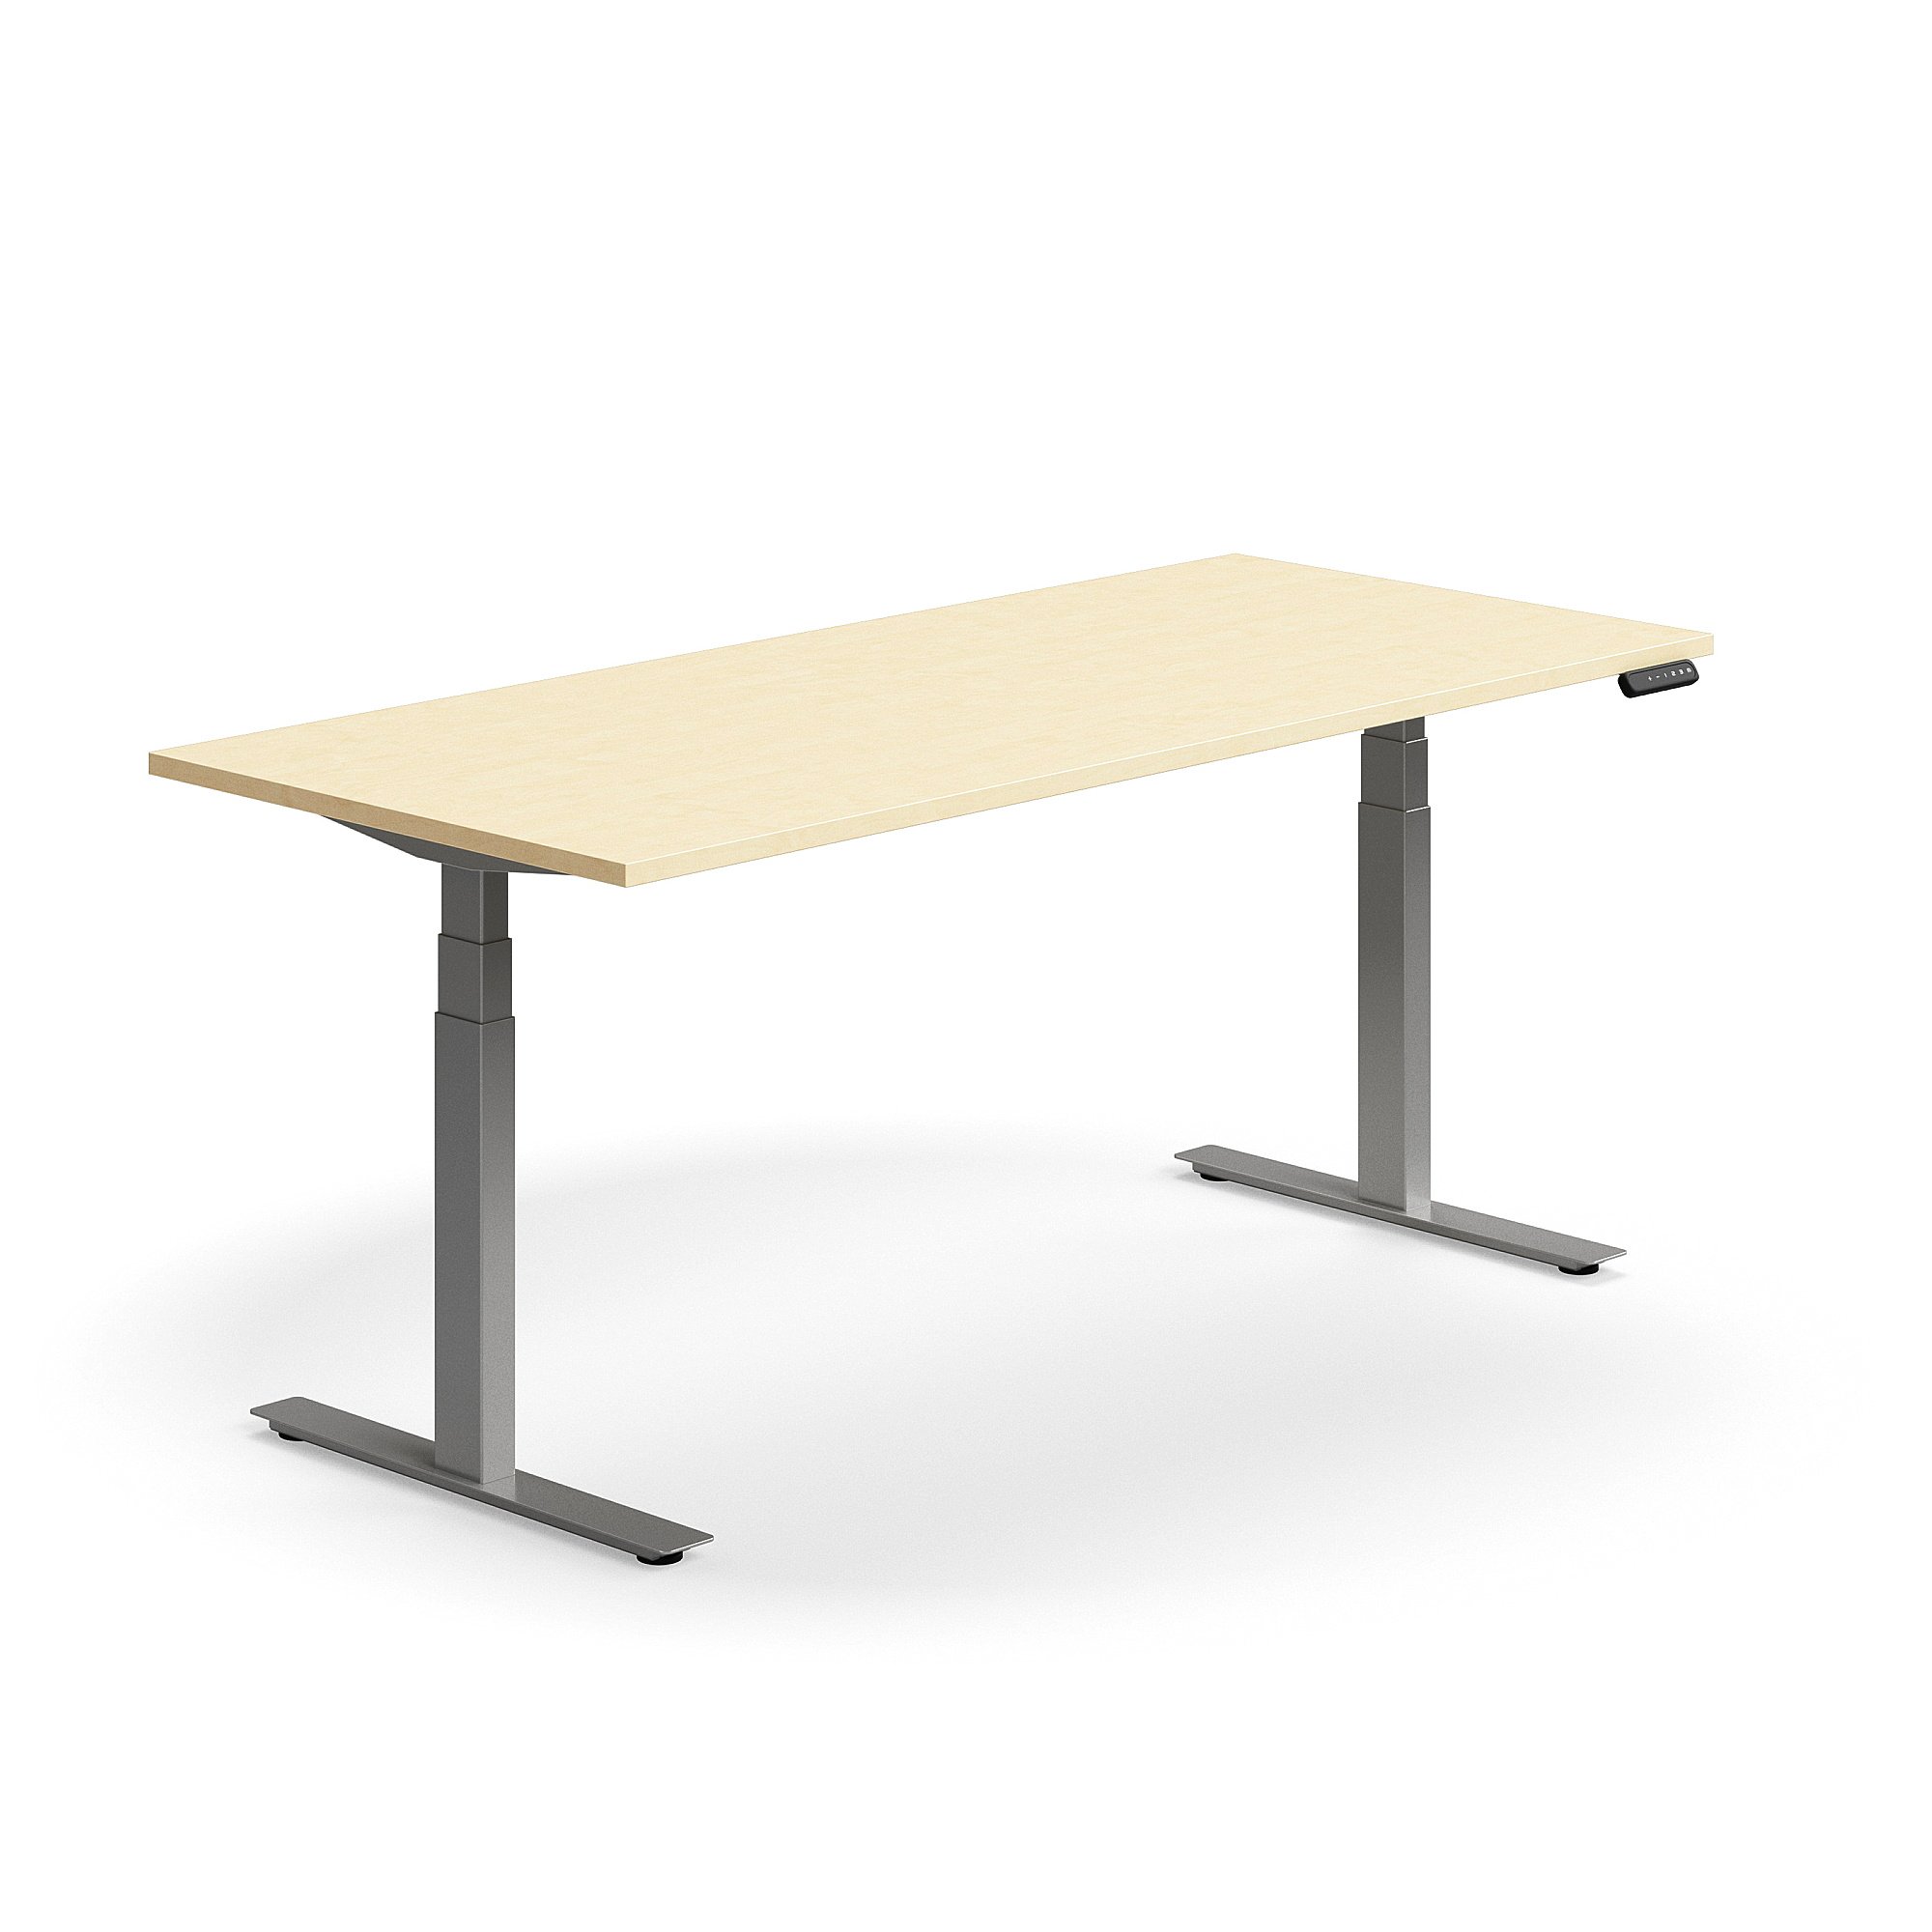 Výškově nastavitelný stůl QBUS, 1800x800 mm, stříbrná podnož, bříza